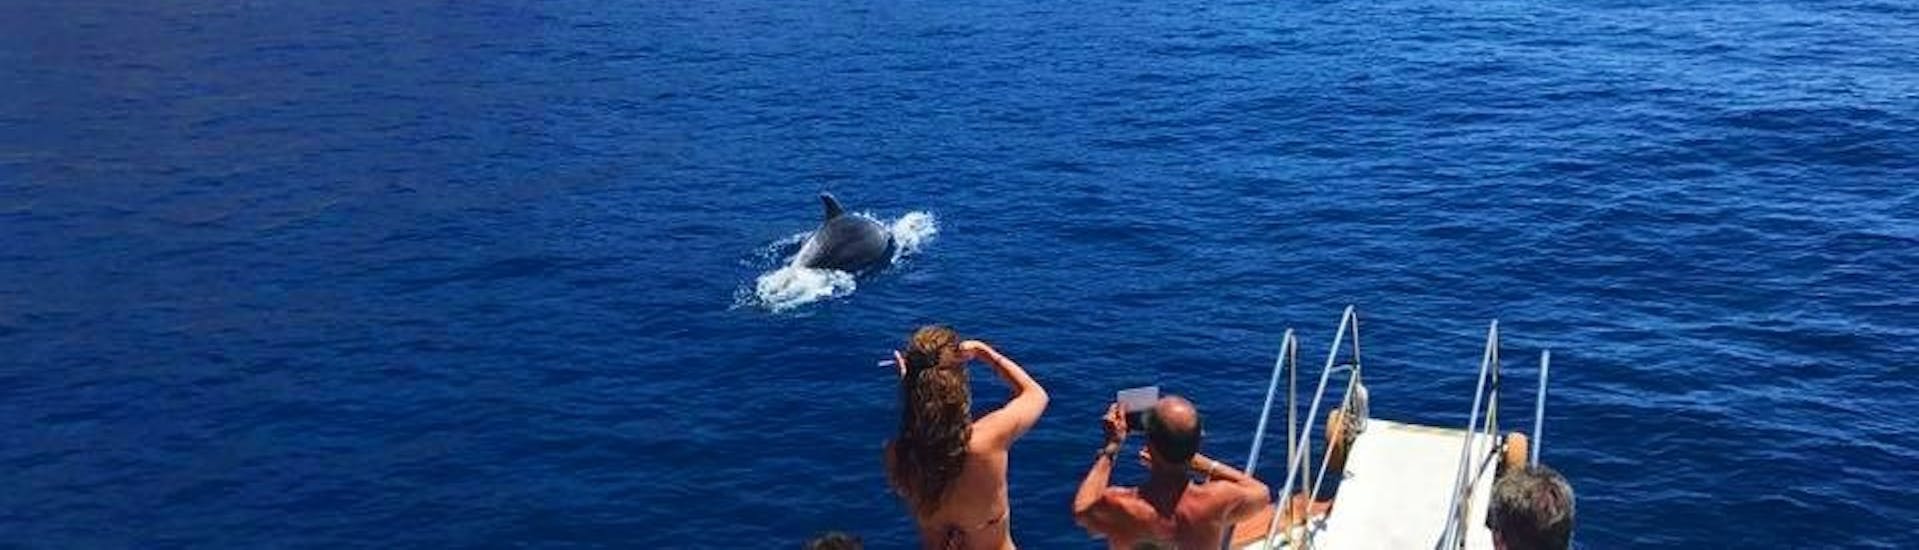 Dolfijnen spotten tijdens een boottocht van Marina di Campo naar Sant'Andrea met dolfijnen spotten met Baby Princess Elba.